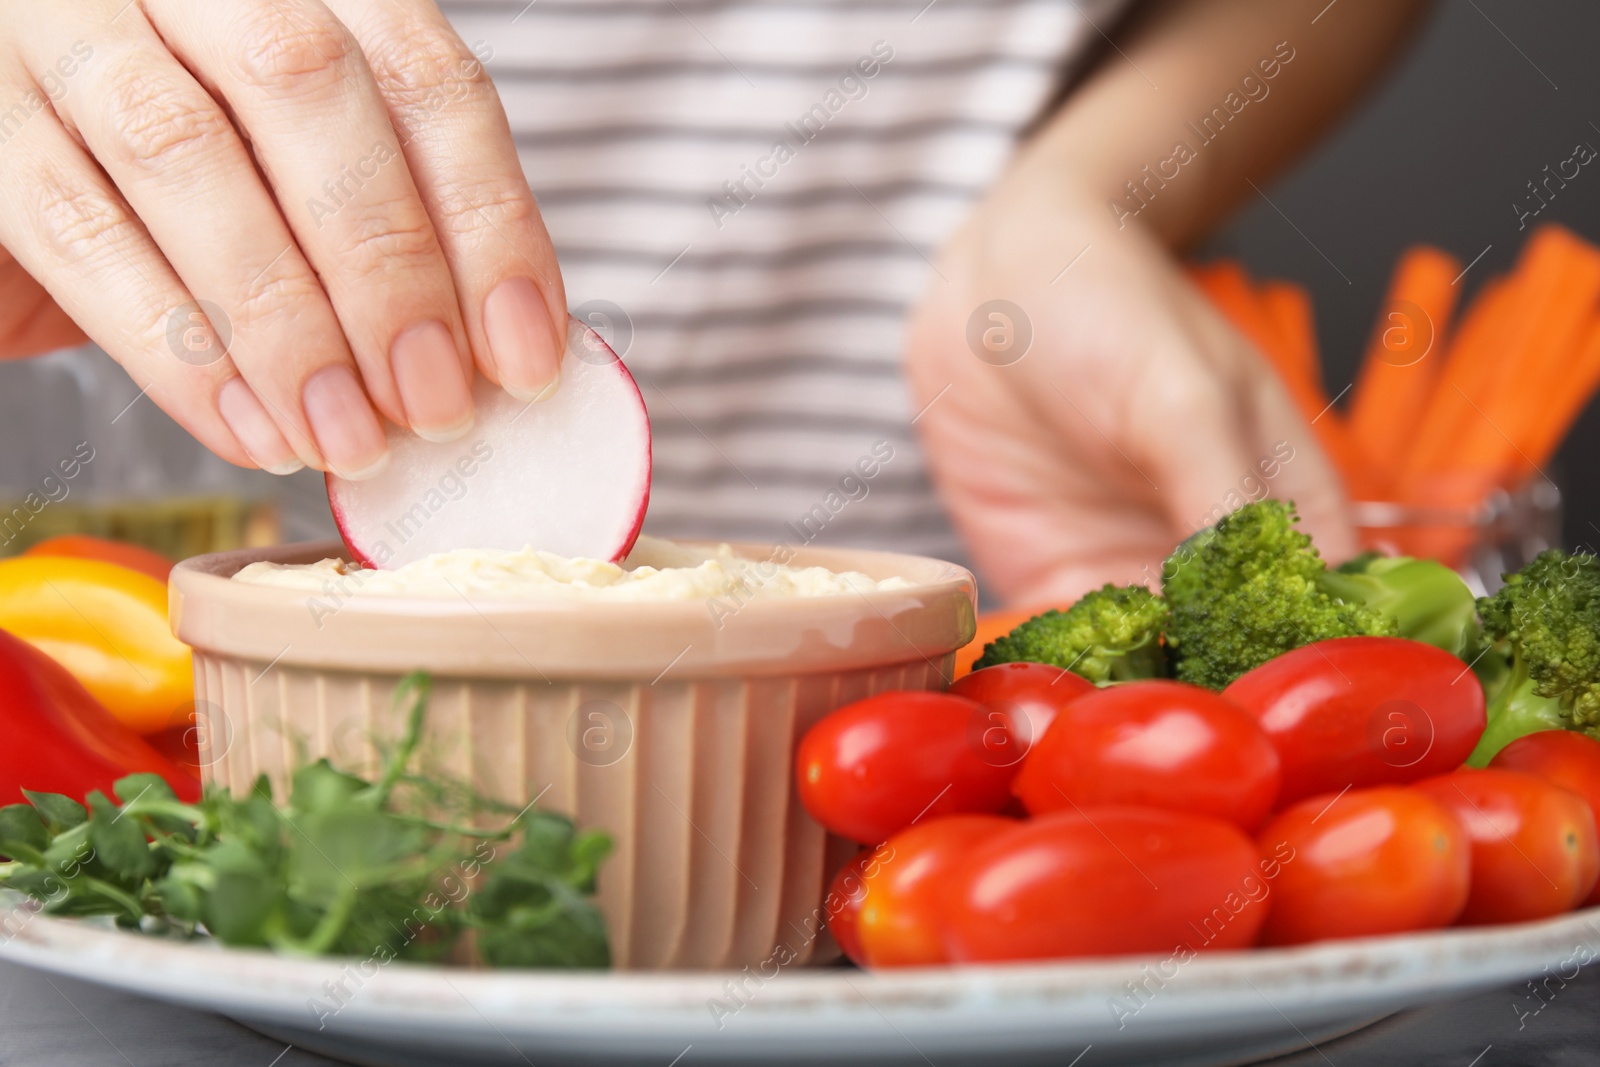 Photo of Woman dipping slice of radish into hummus at table, closeup